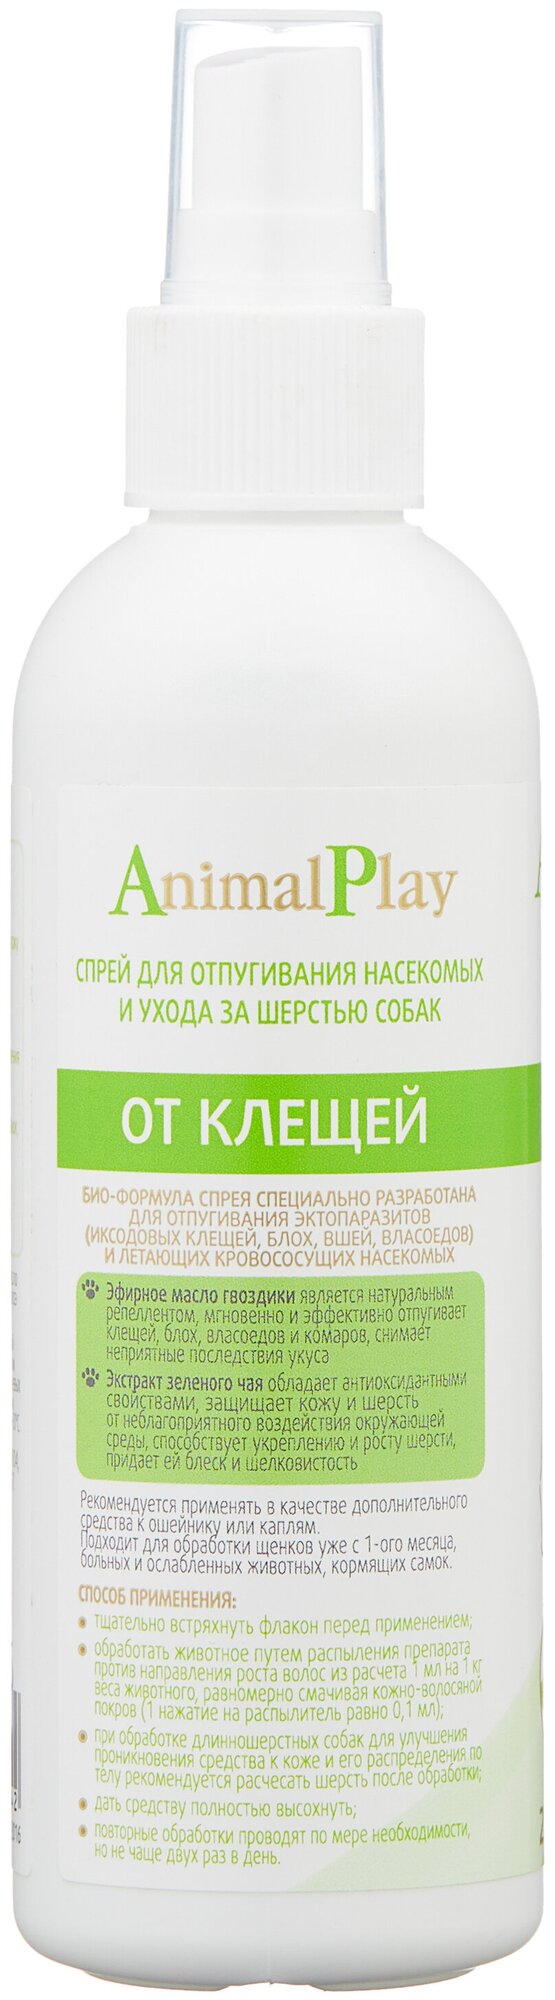 Animal Play спрей от блох и клещей репеллентный для щенков, собак, кошек, для домашних животных 1 уп.